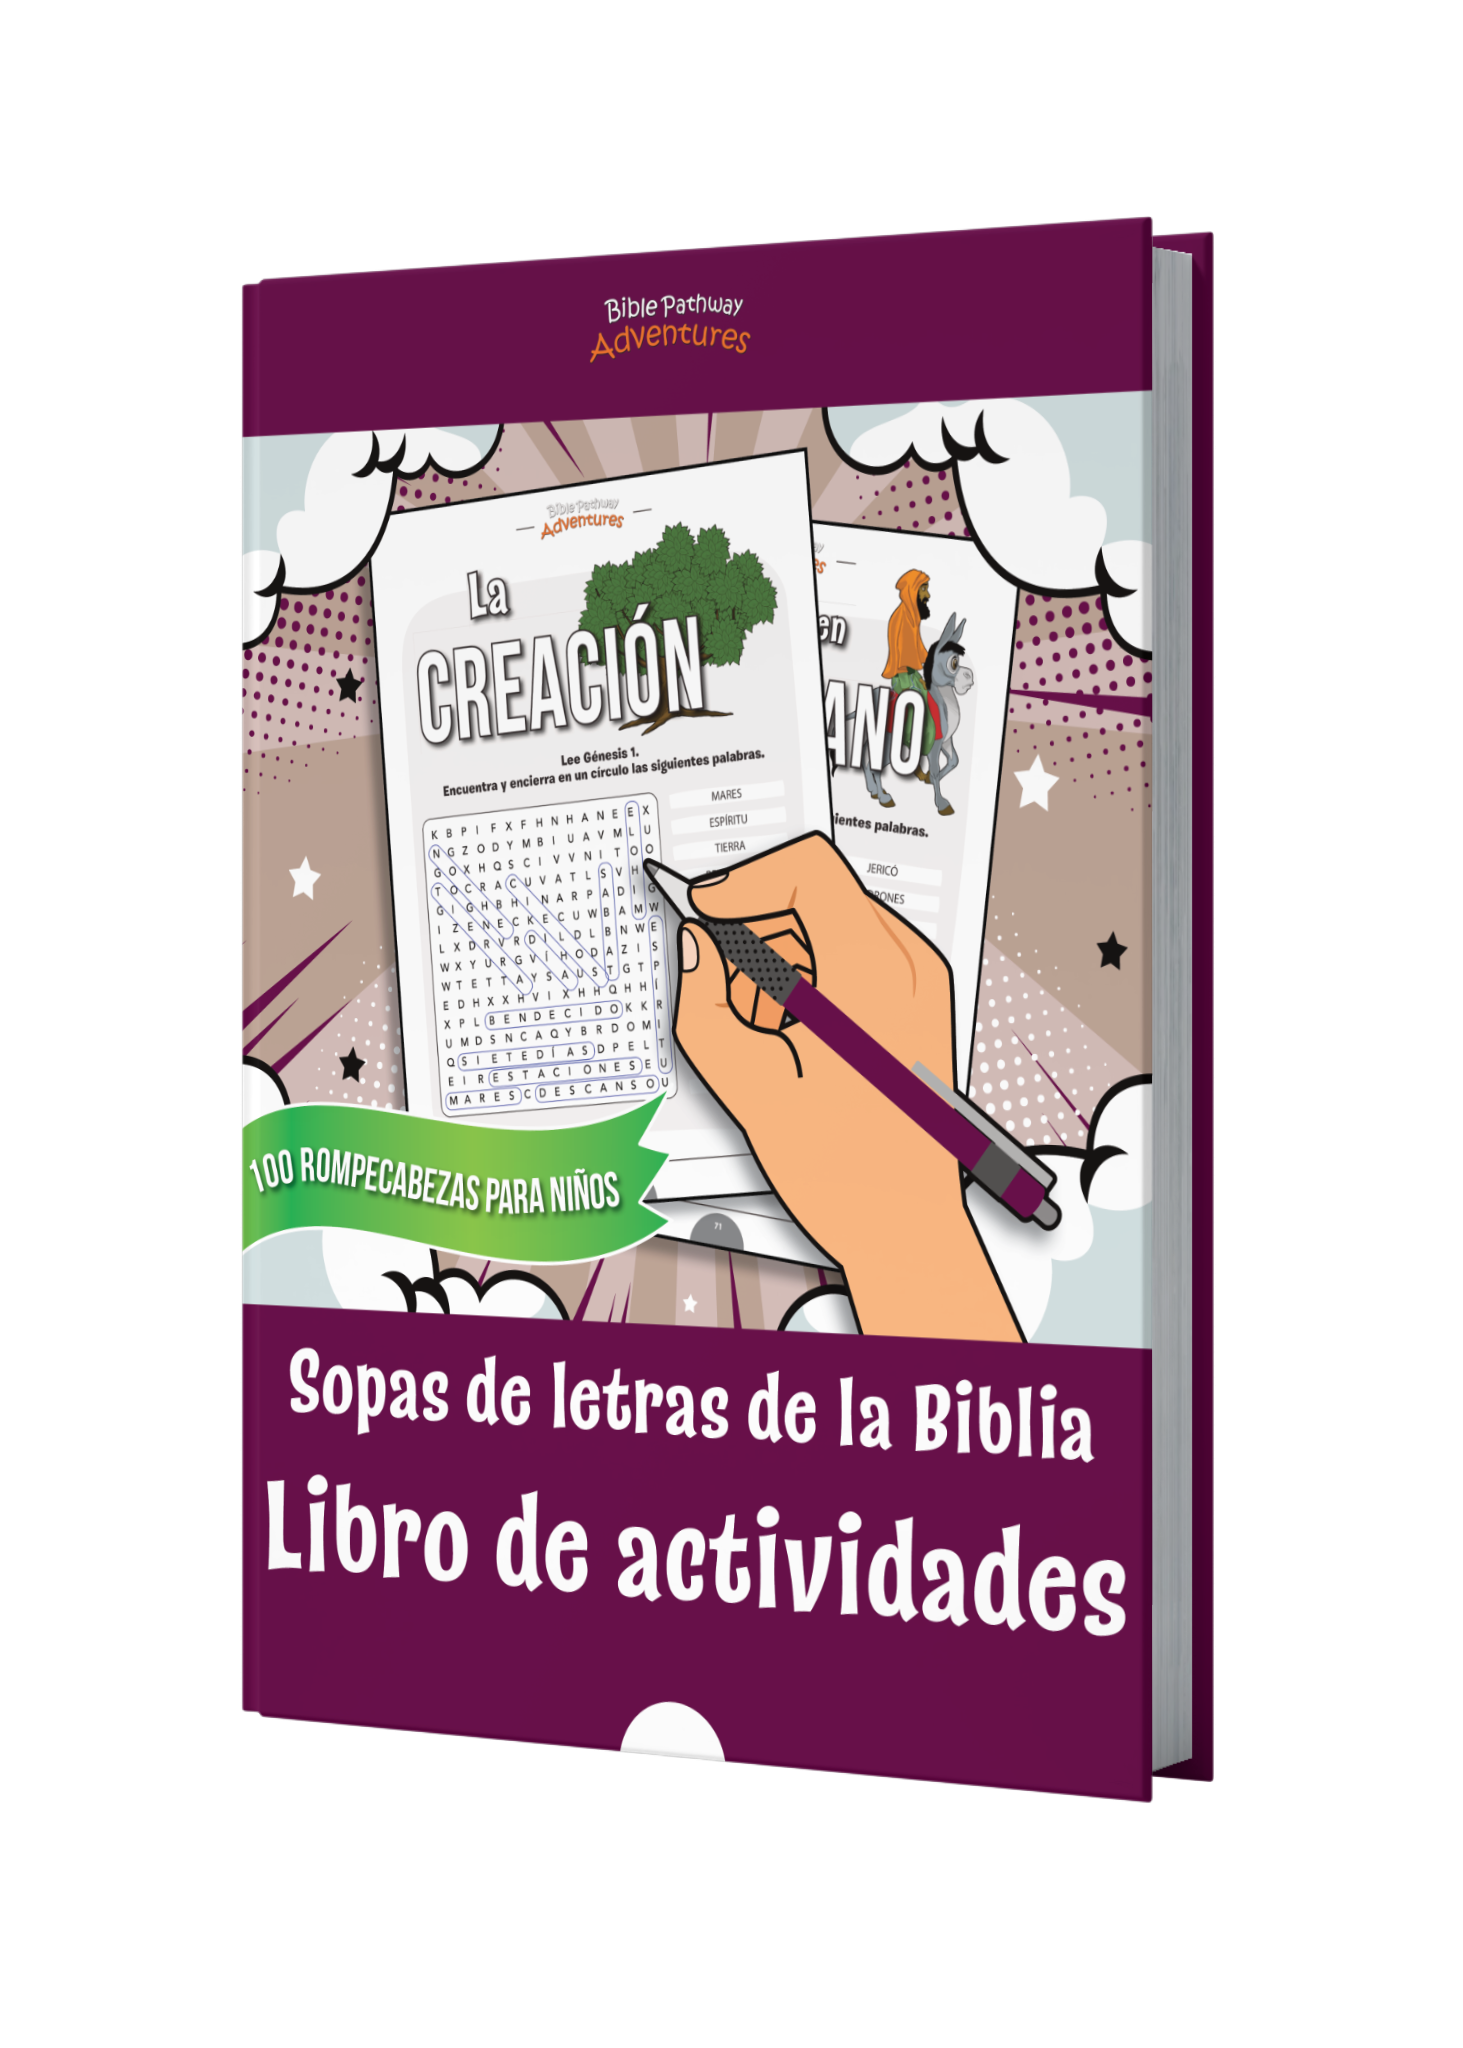 Sopas de letras de la Biblia: Libro de actividades book cover